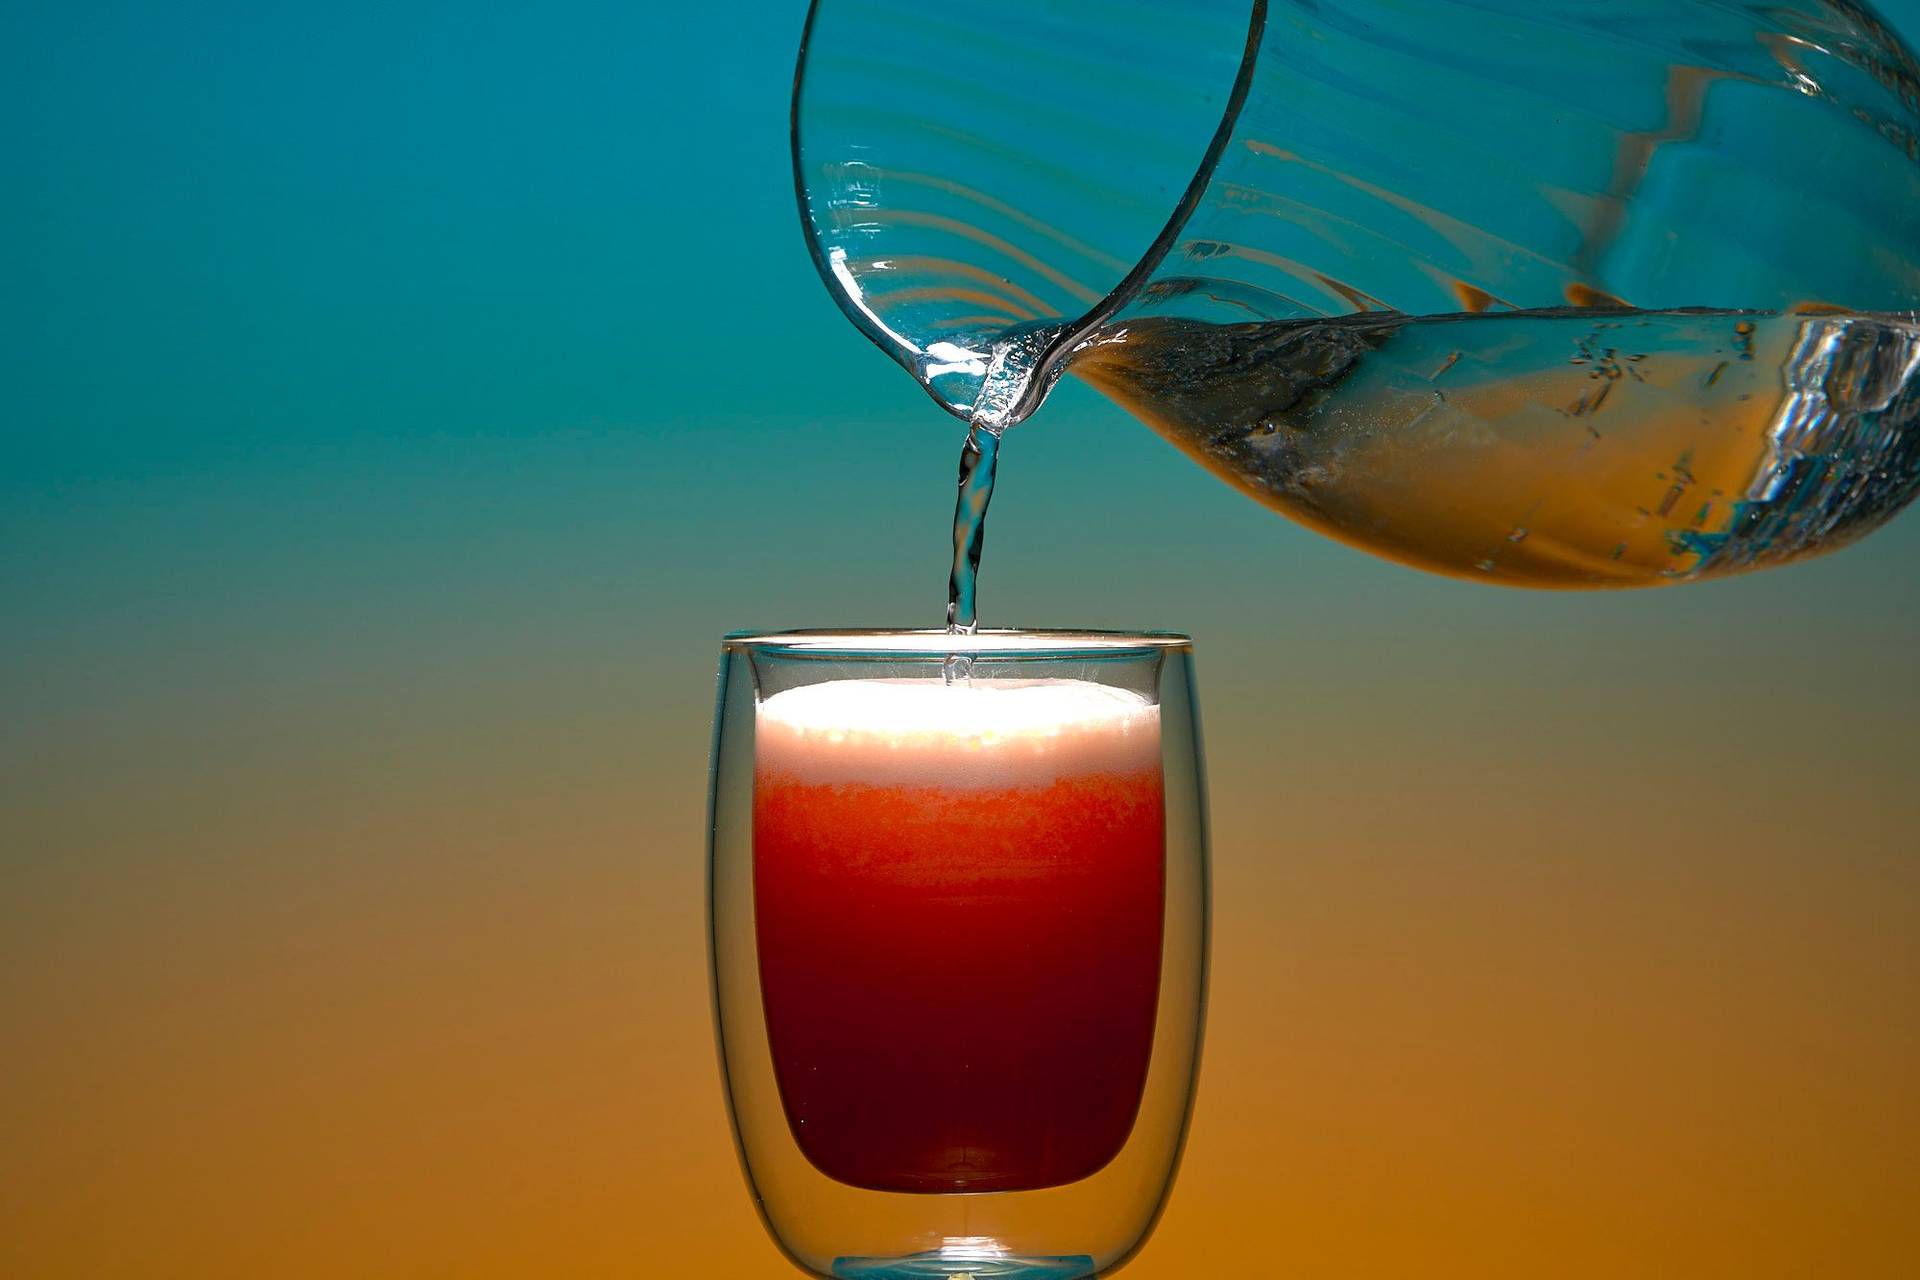 alkoholfreier grapefruit fizz mocktail vor blauem und orangenem hintergrund eingießen